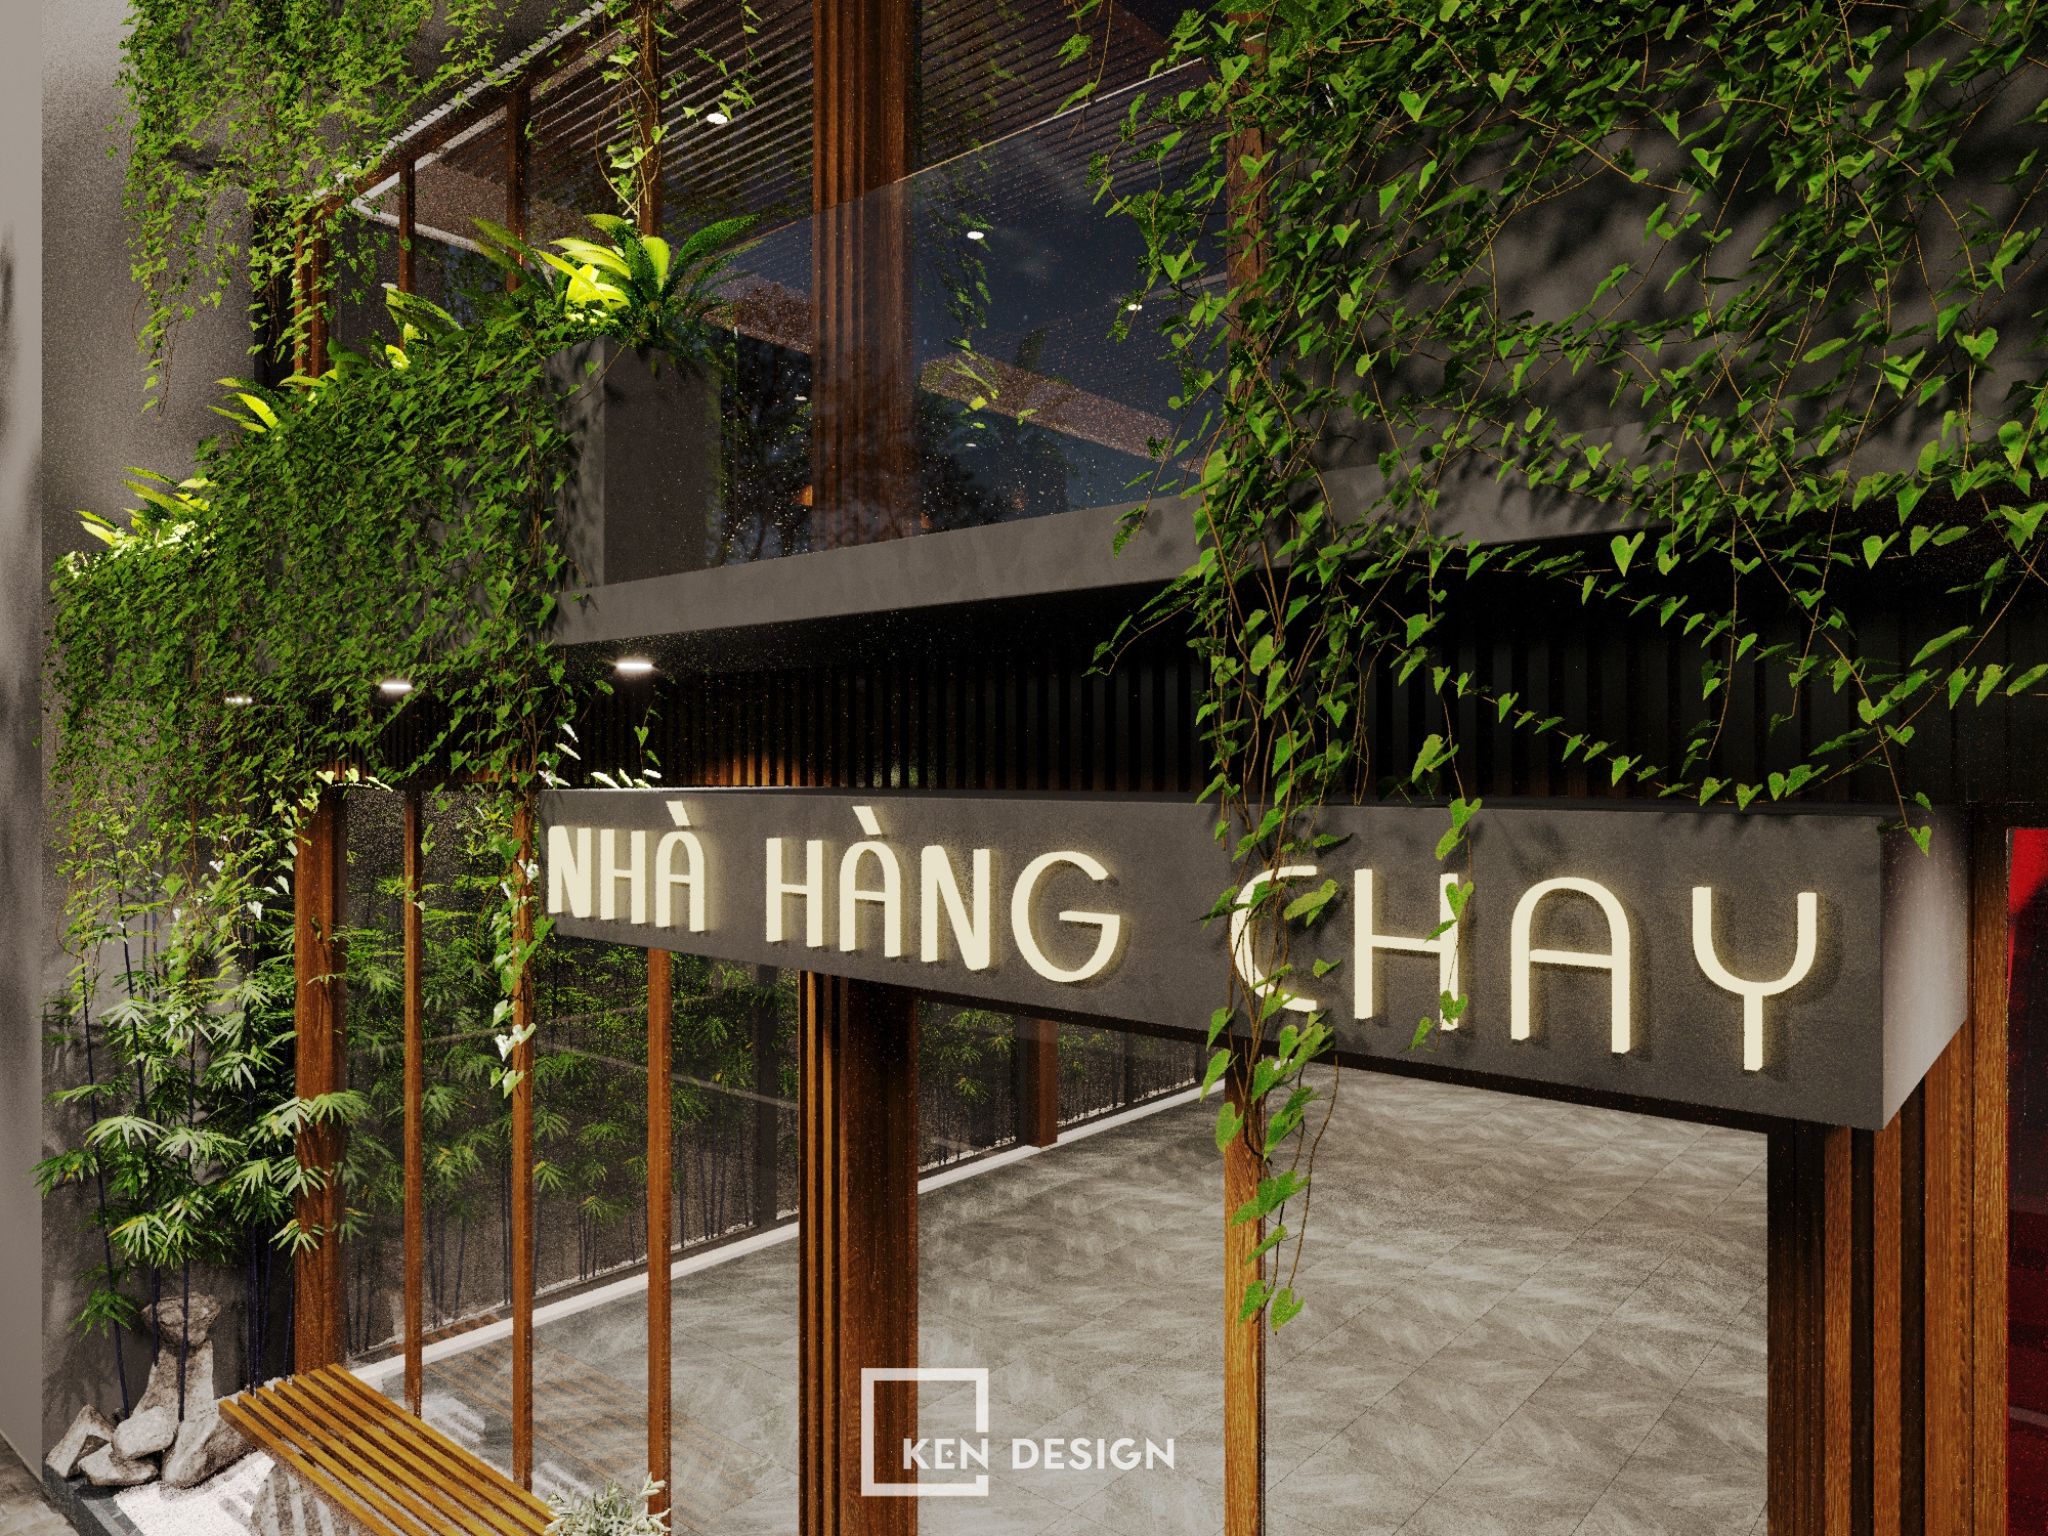 Thiết kế kiến trúc nhà hàng Chay tại Long Biên